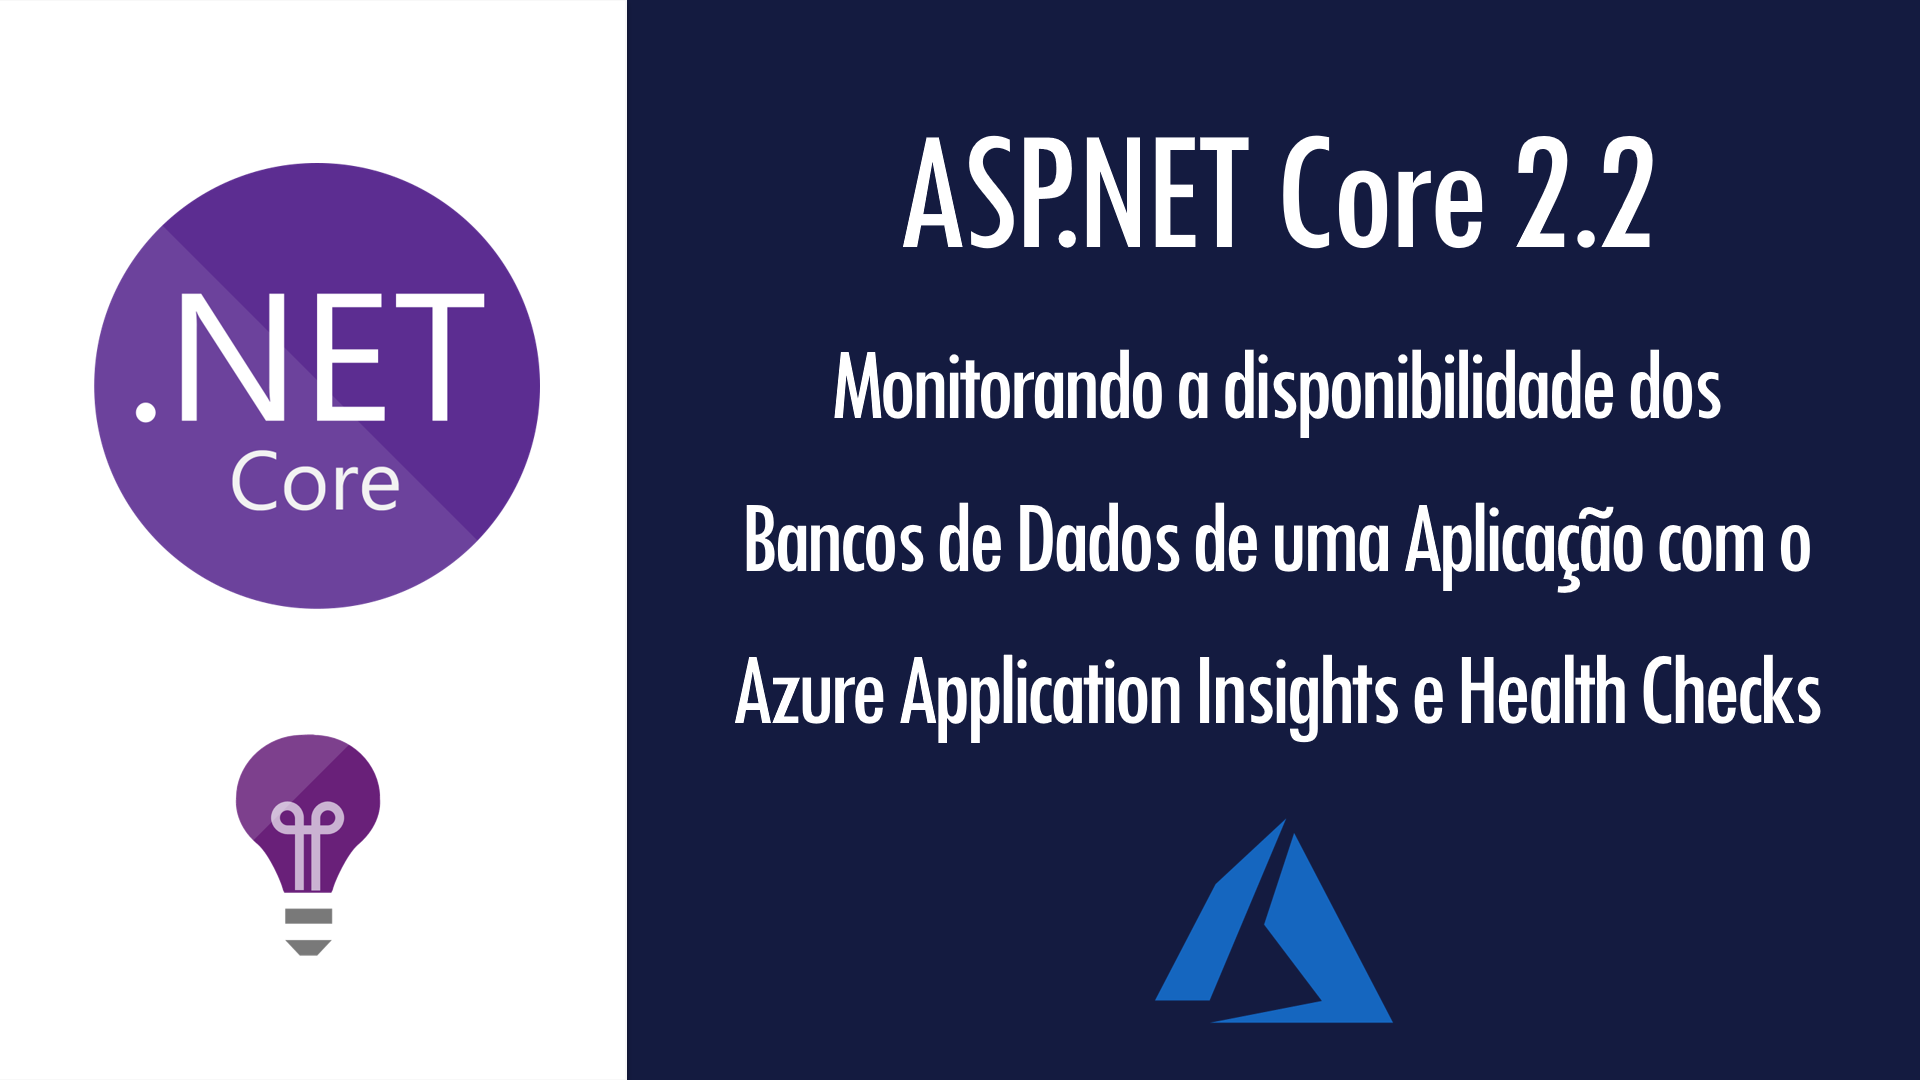 ASP.NET Core 2.2 + Application Insights: monitorando a disponibilidade dos  BDs de uma aplicação | by Renato Groffe | Medium